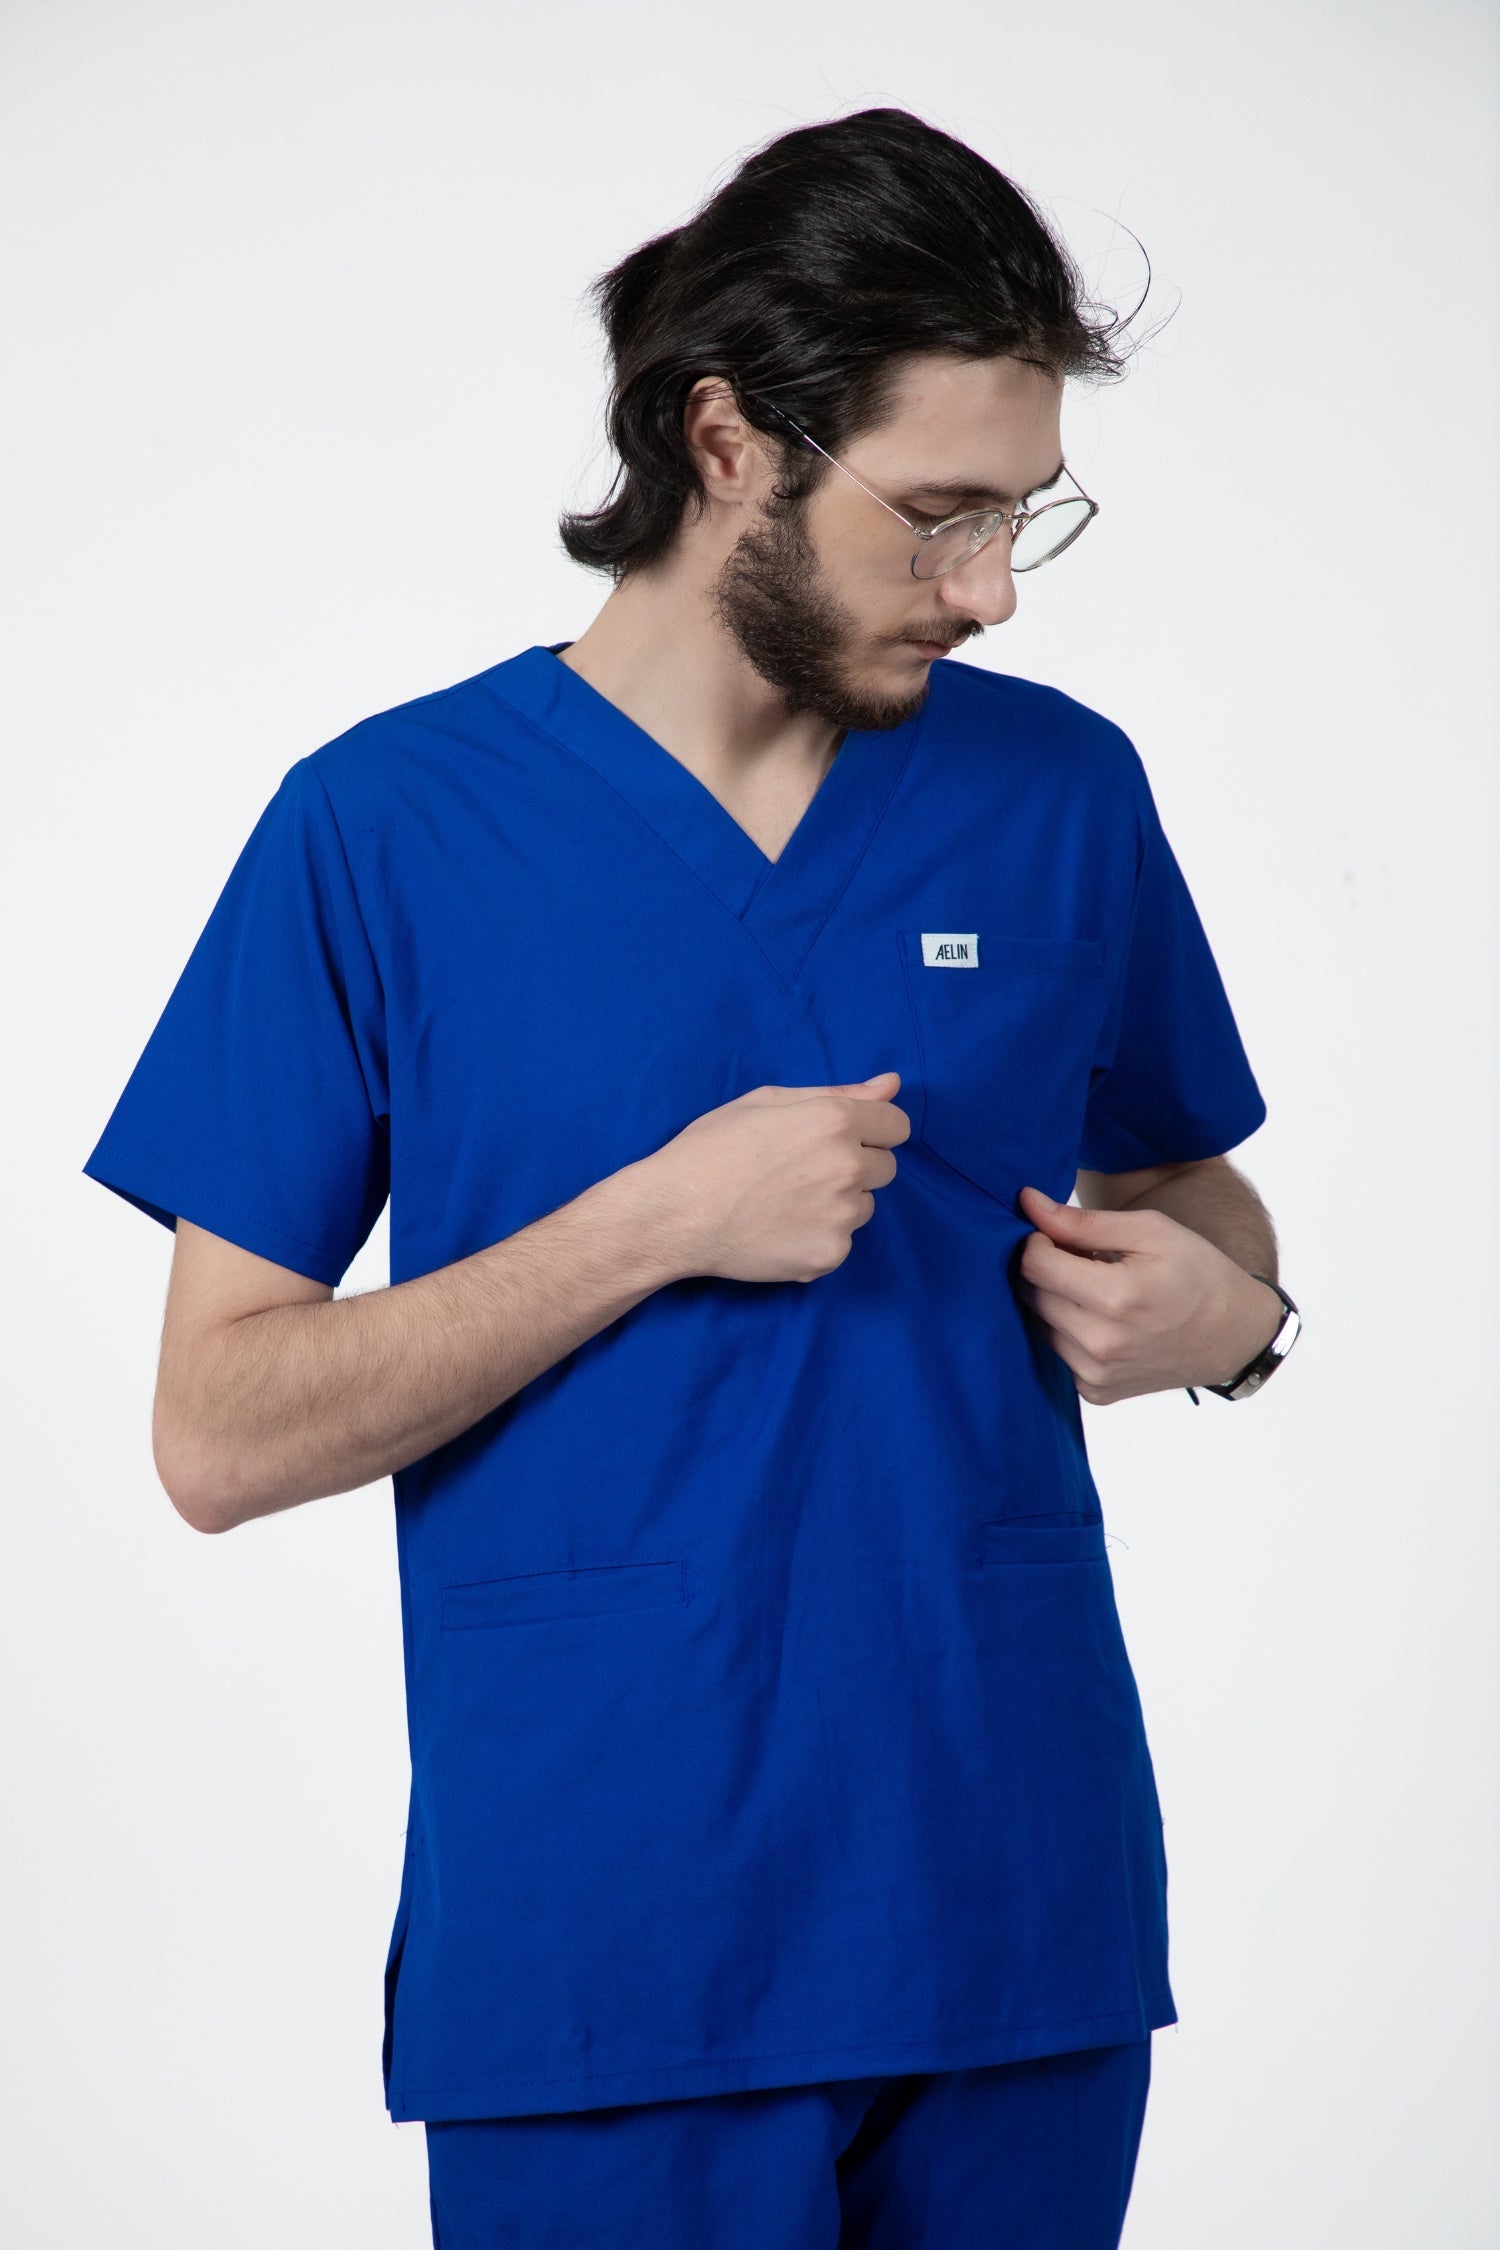 Un homme portant une tunique médicale bleu royal Slimfit parmi les tenues médicales